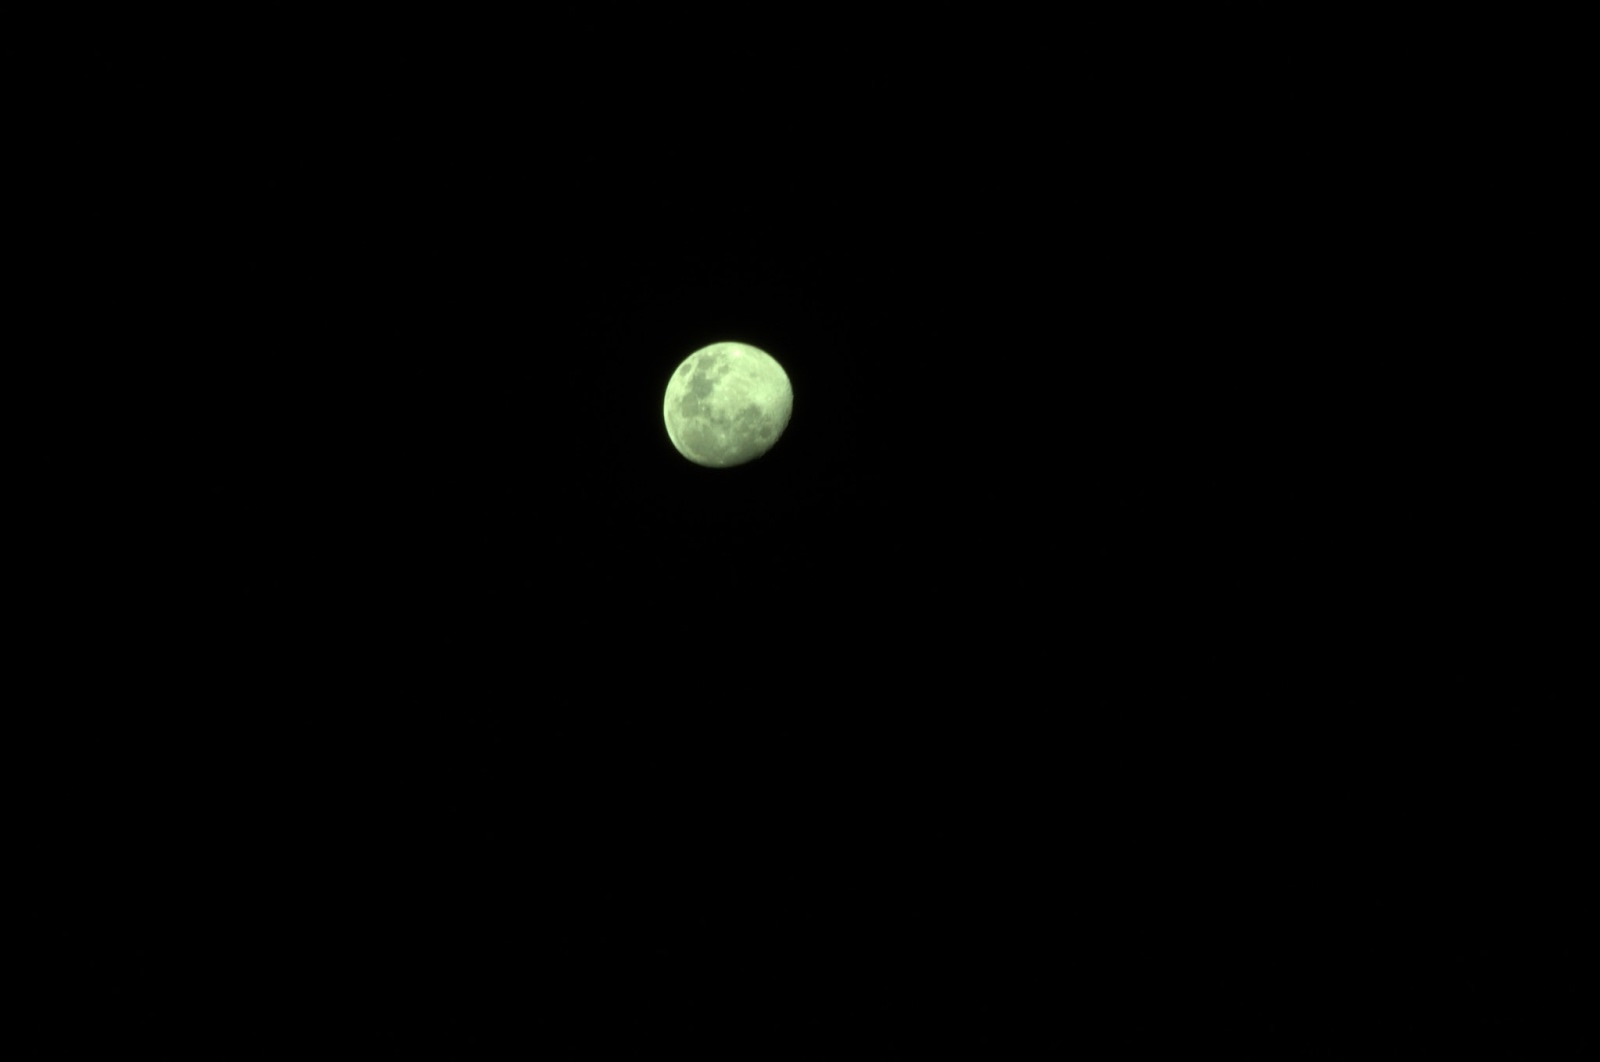 Green moon